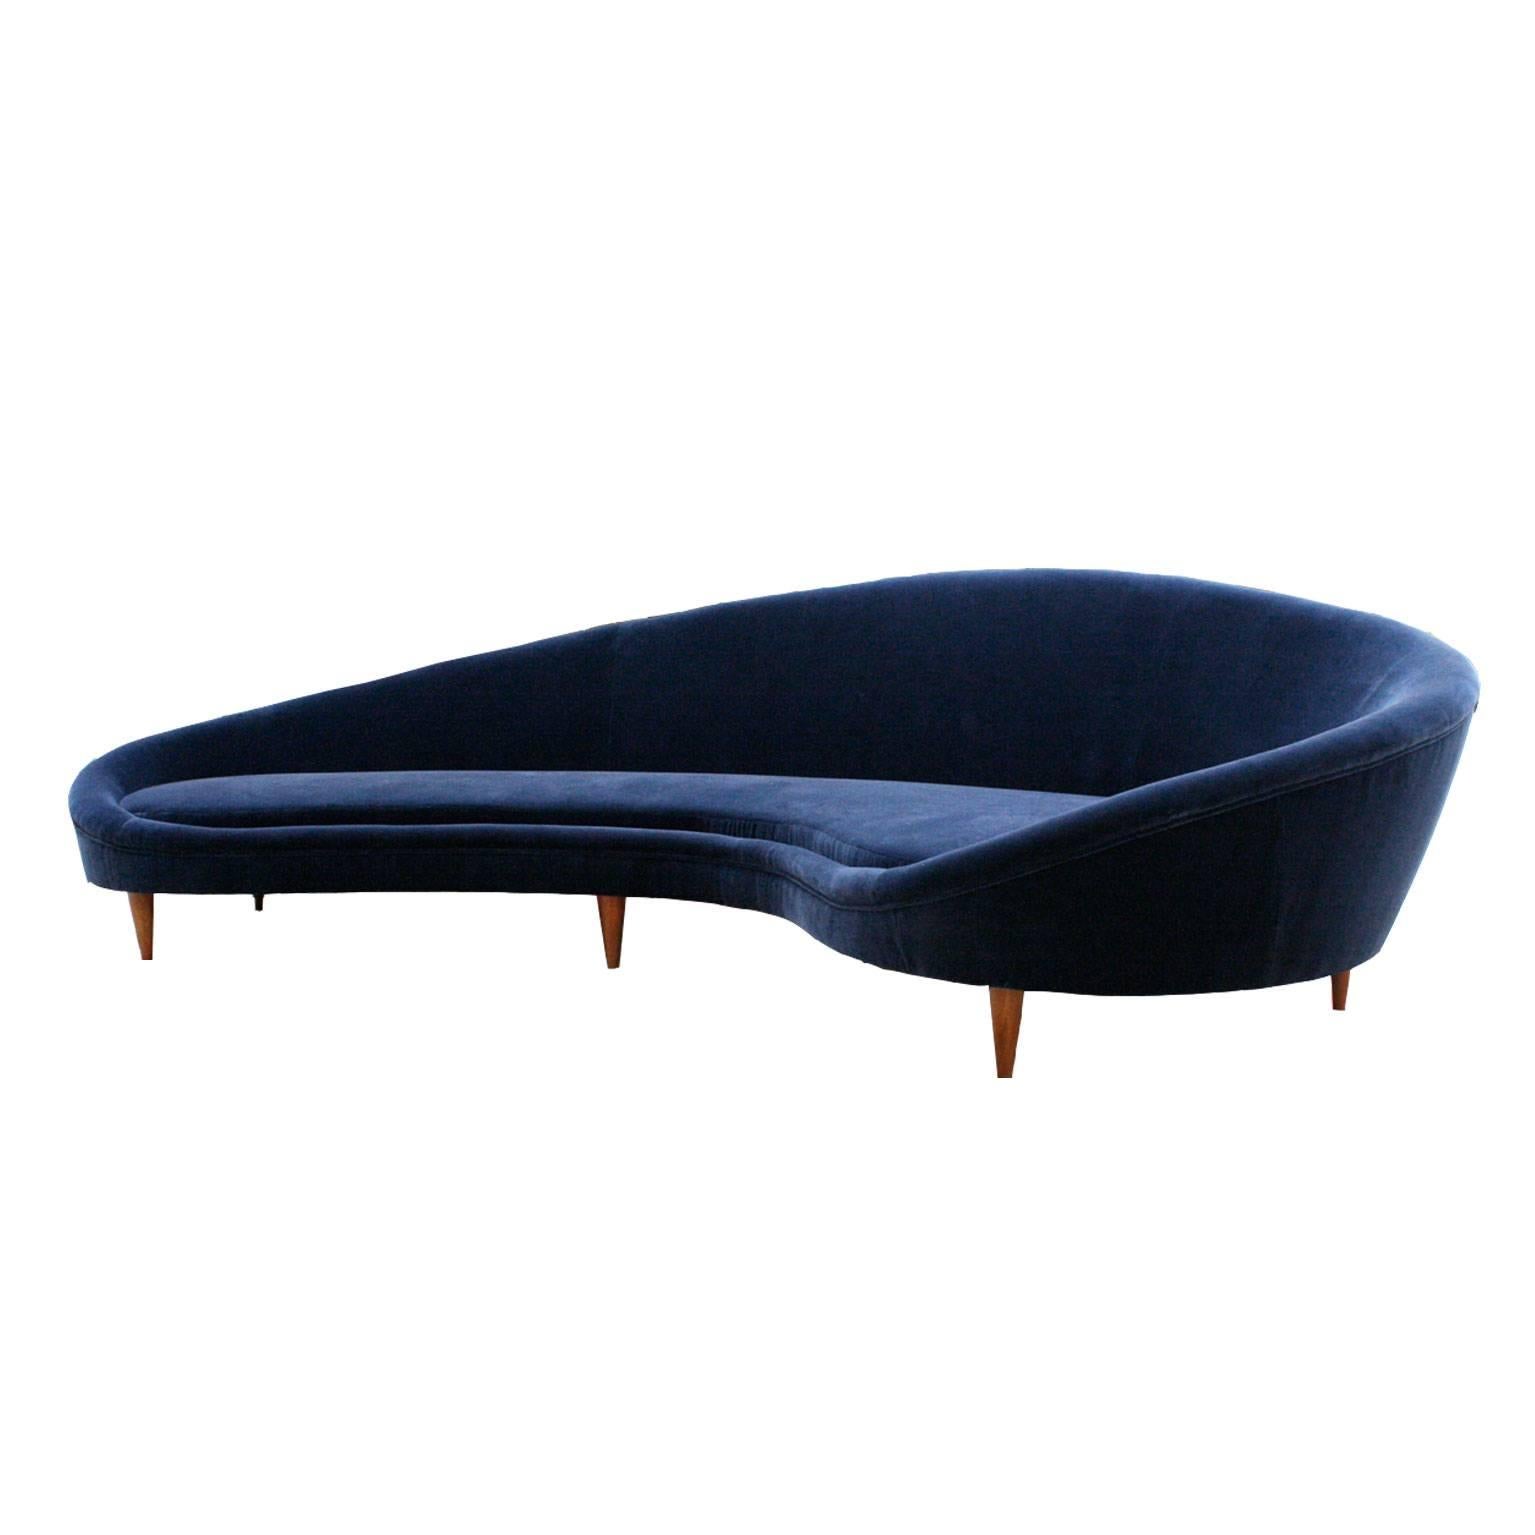 Sofa Designed by Ico Parisi